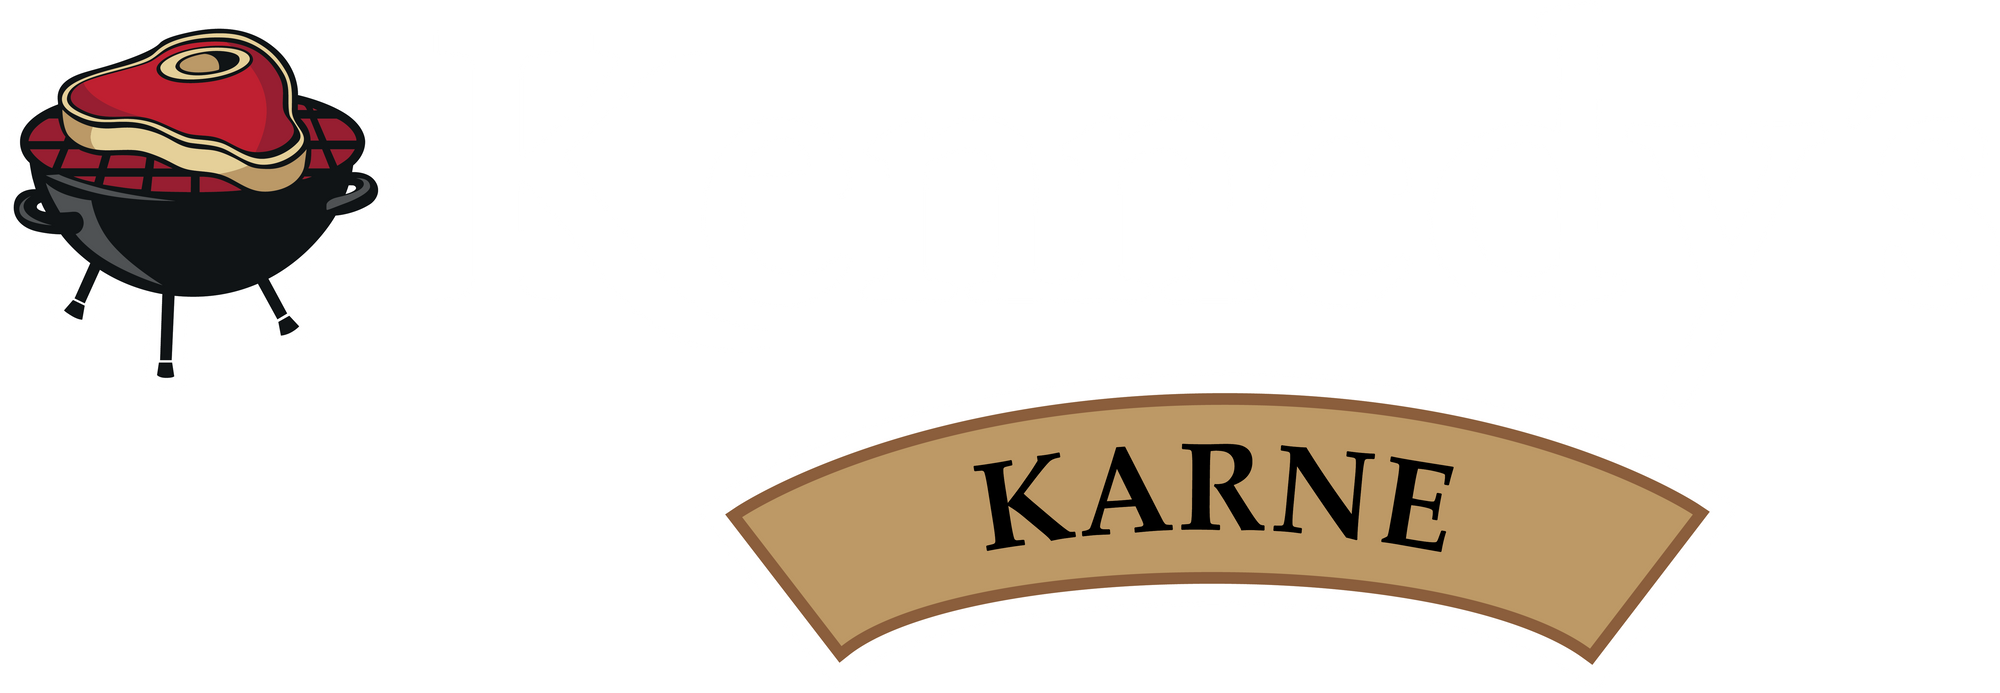 Kennedy's Karne Meat Market